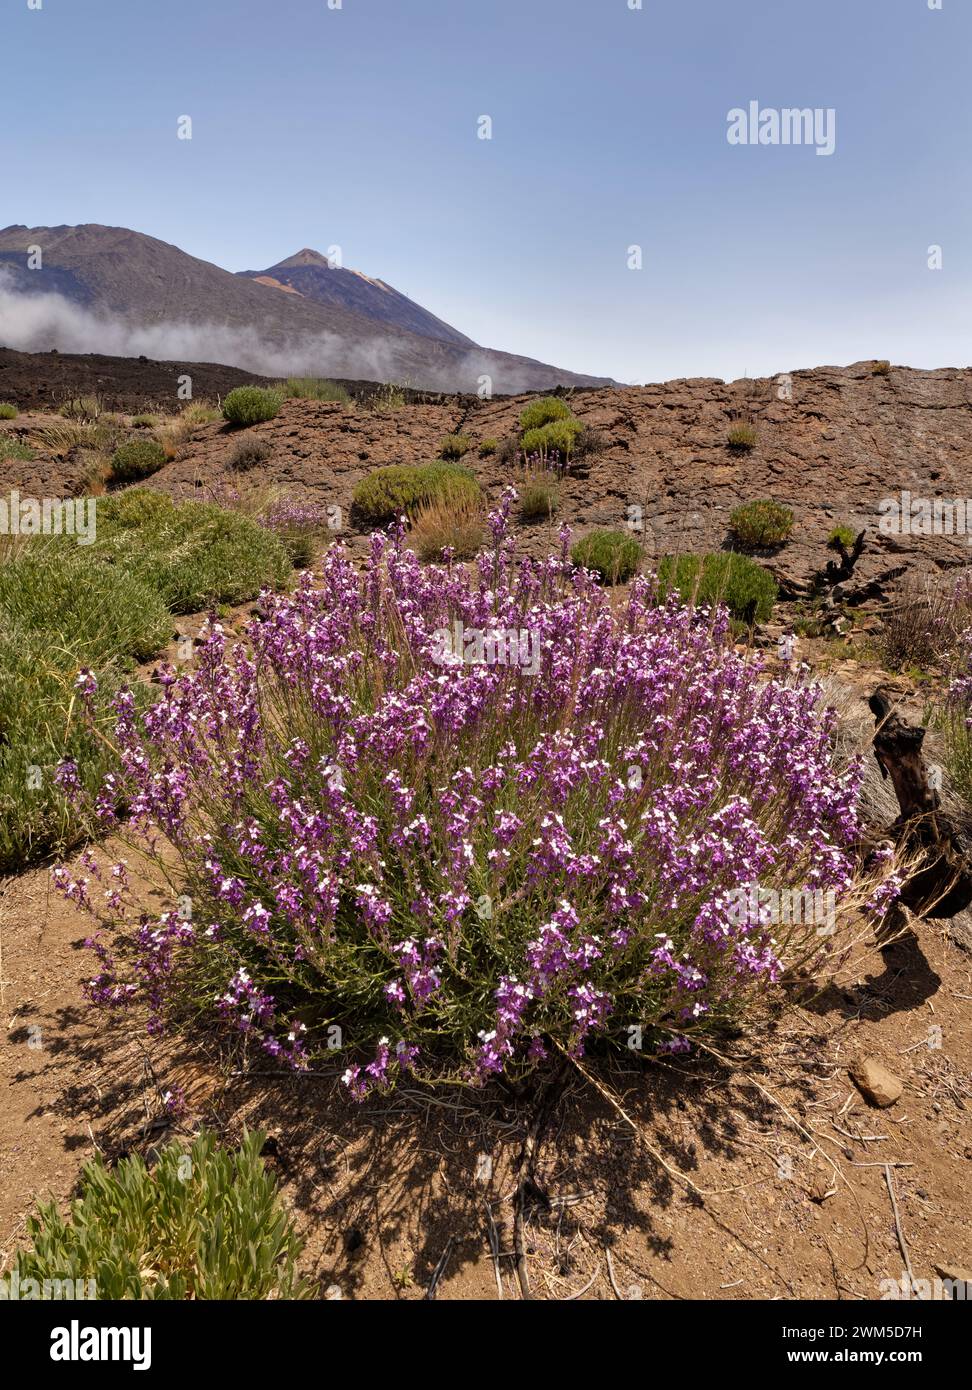 La flor de la pared del Teide (Erysimum scoparium) se agrupa en la caldera de Las Canadas, debajo del Teide, Parque Nacional del Teide, Tenerife, mayo. Foto de stock